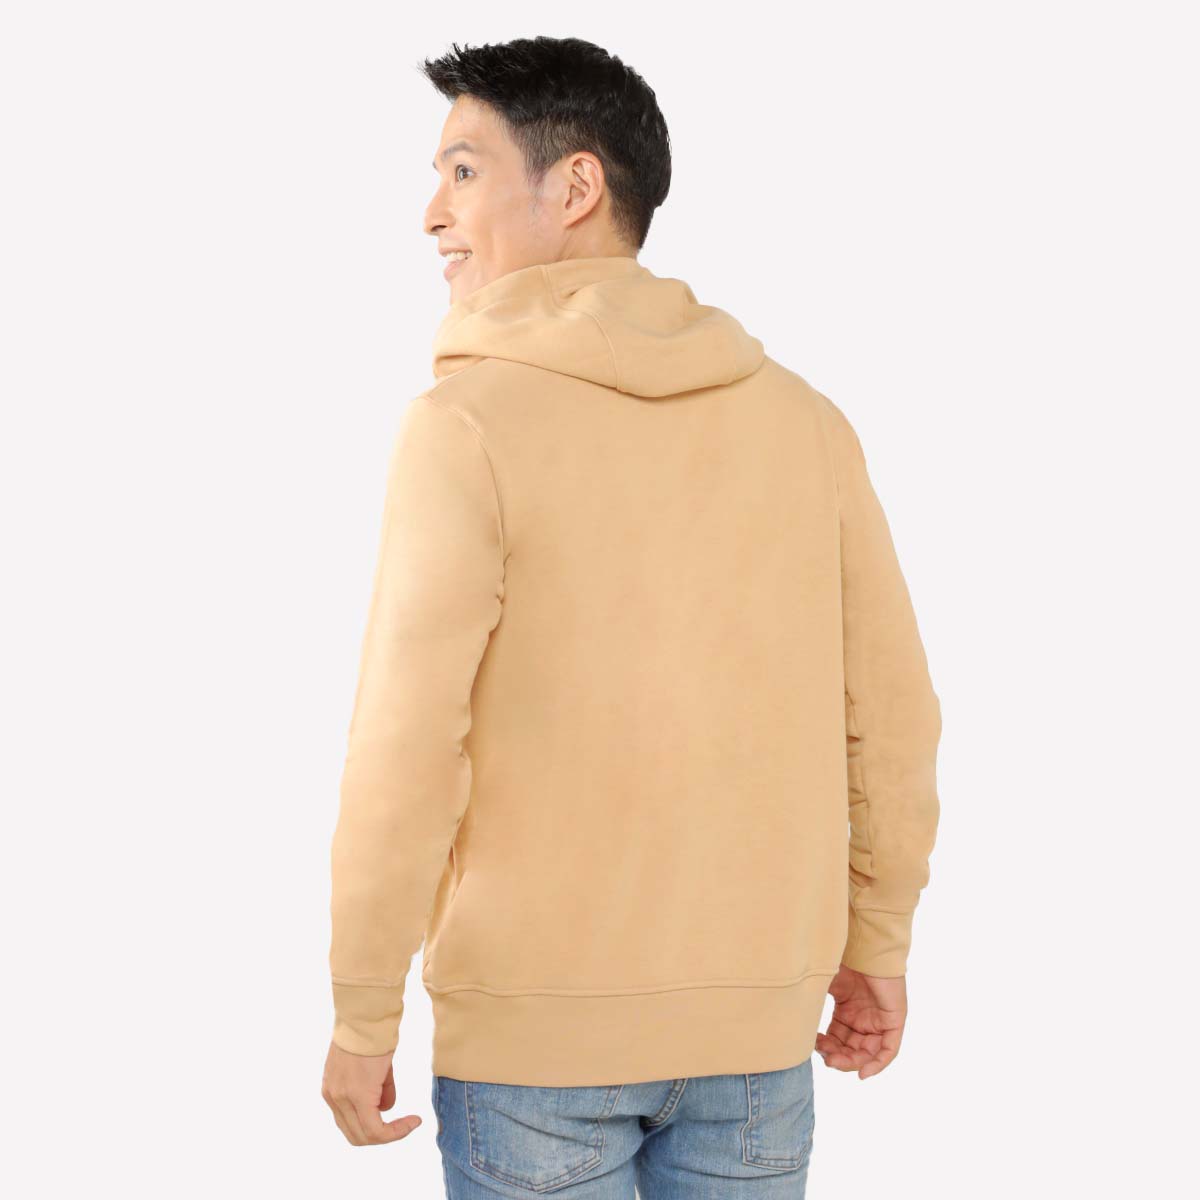 Juaraga Sweater Hoodie - JR Solid - Coklat